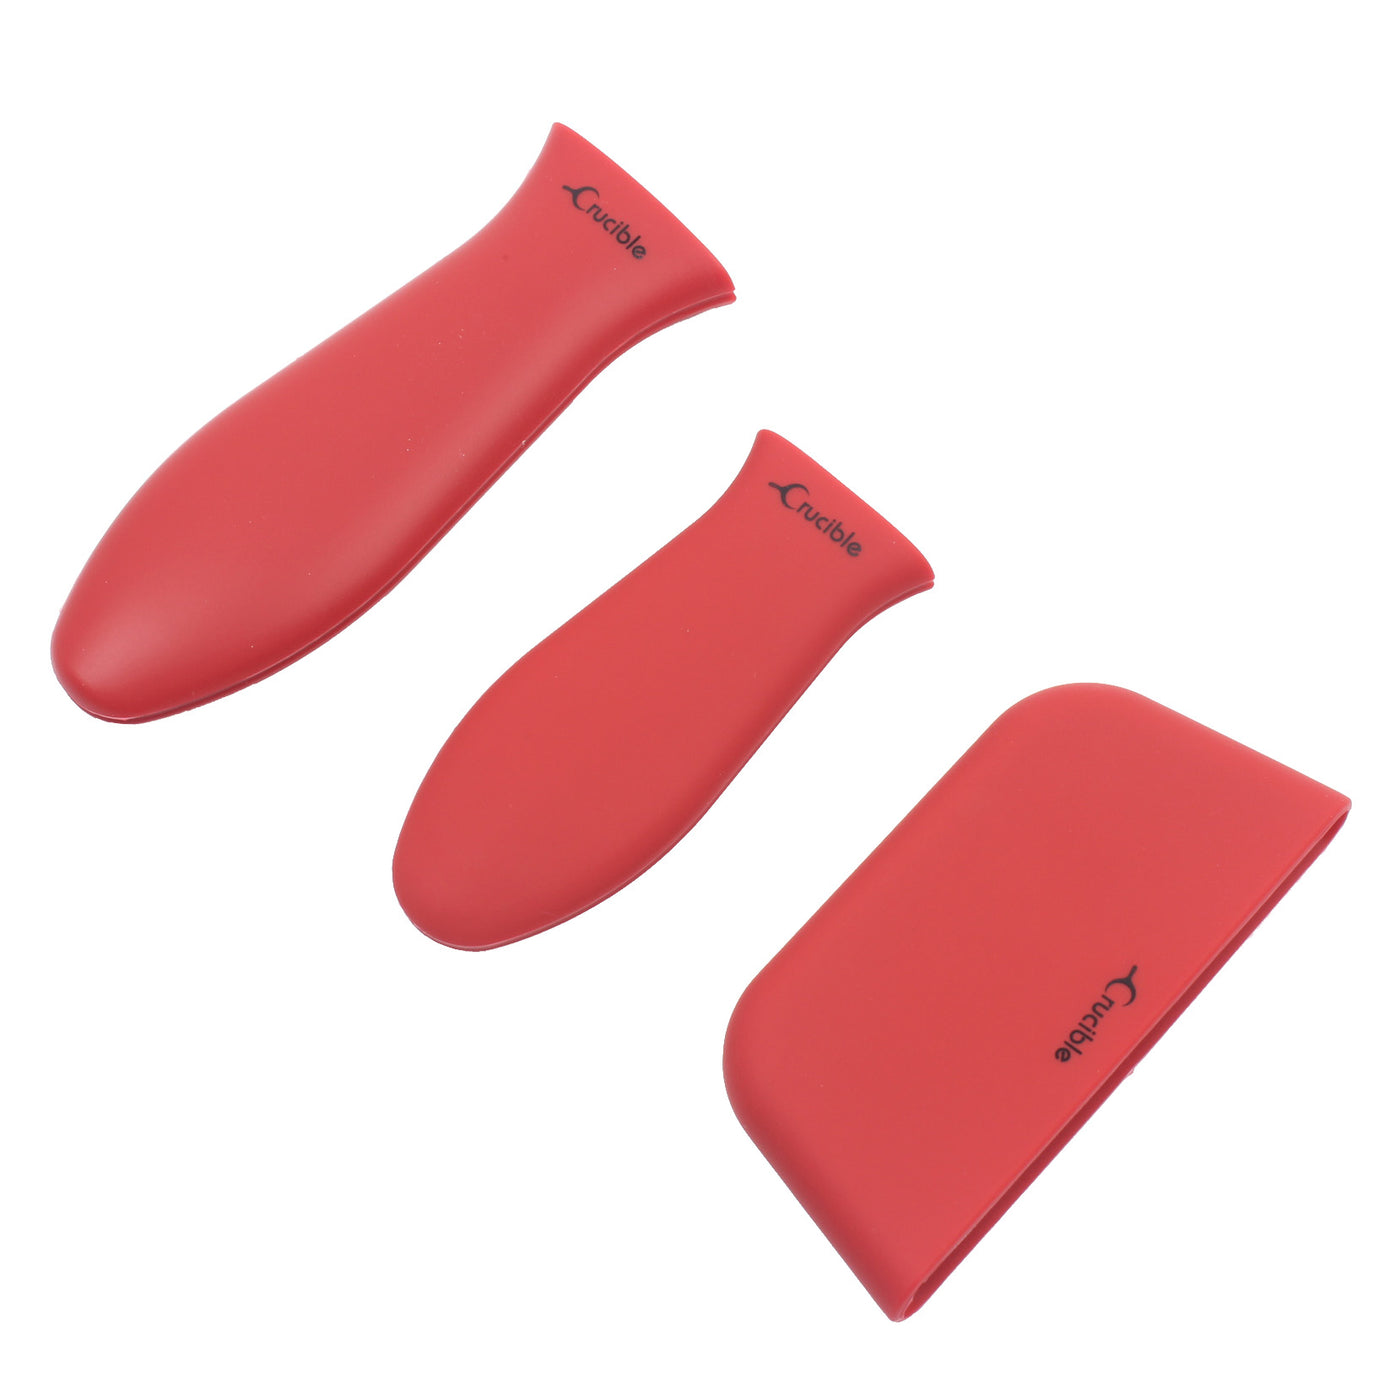 Suporte para alça quente de silicone, pegadores de panela (vermelho misto de 3 pacotes), punho de manga, capa de alça